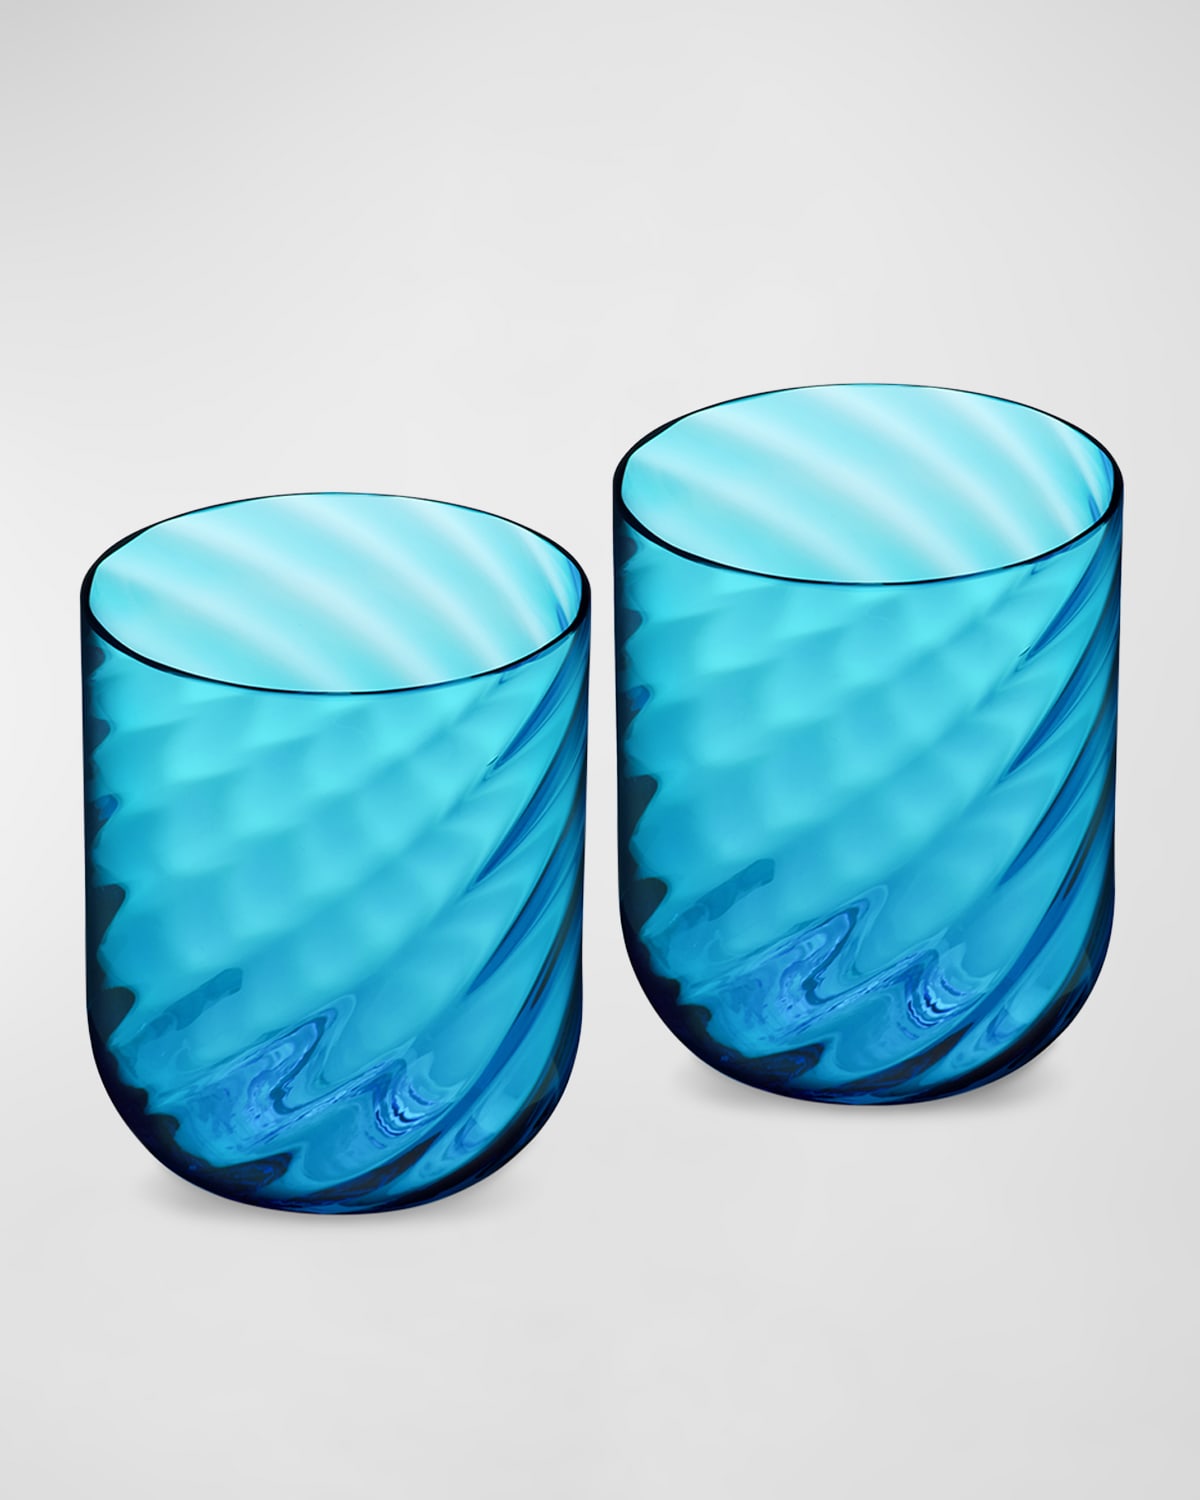 Carretto Murano Water Glasses, Set of 2